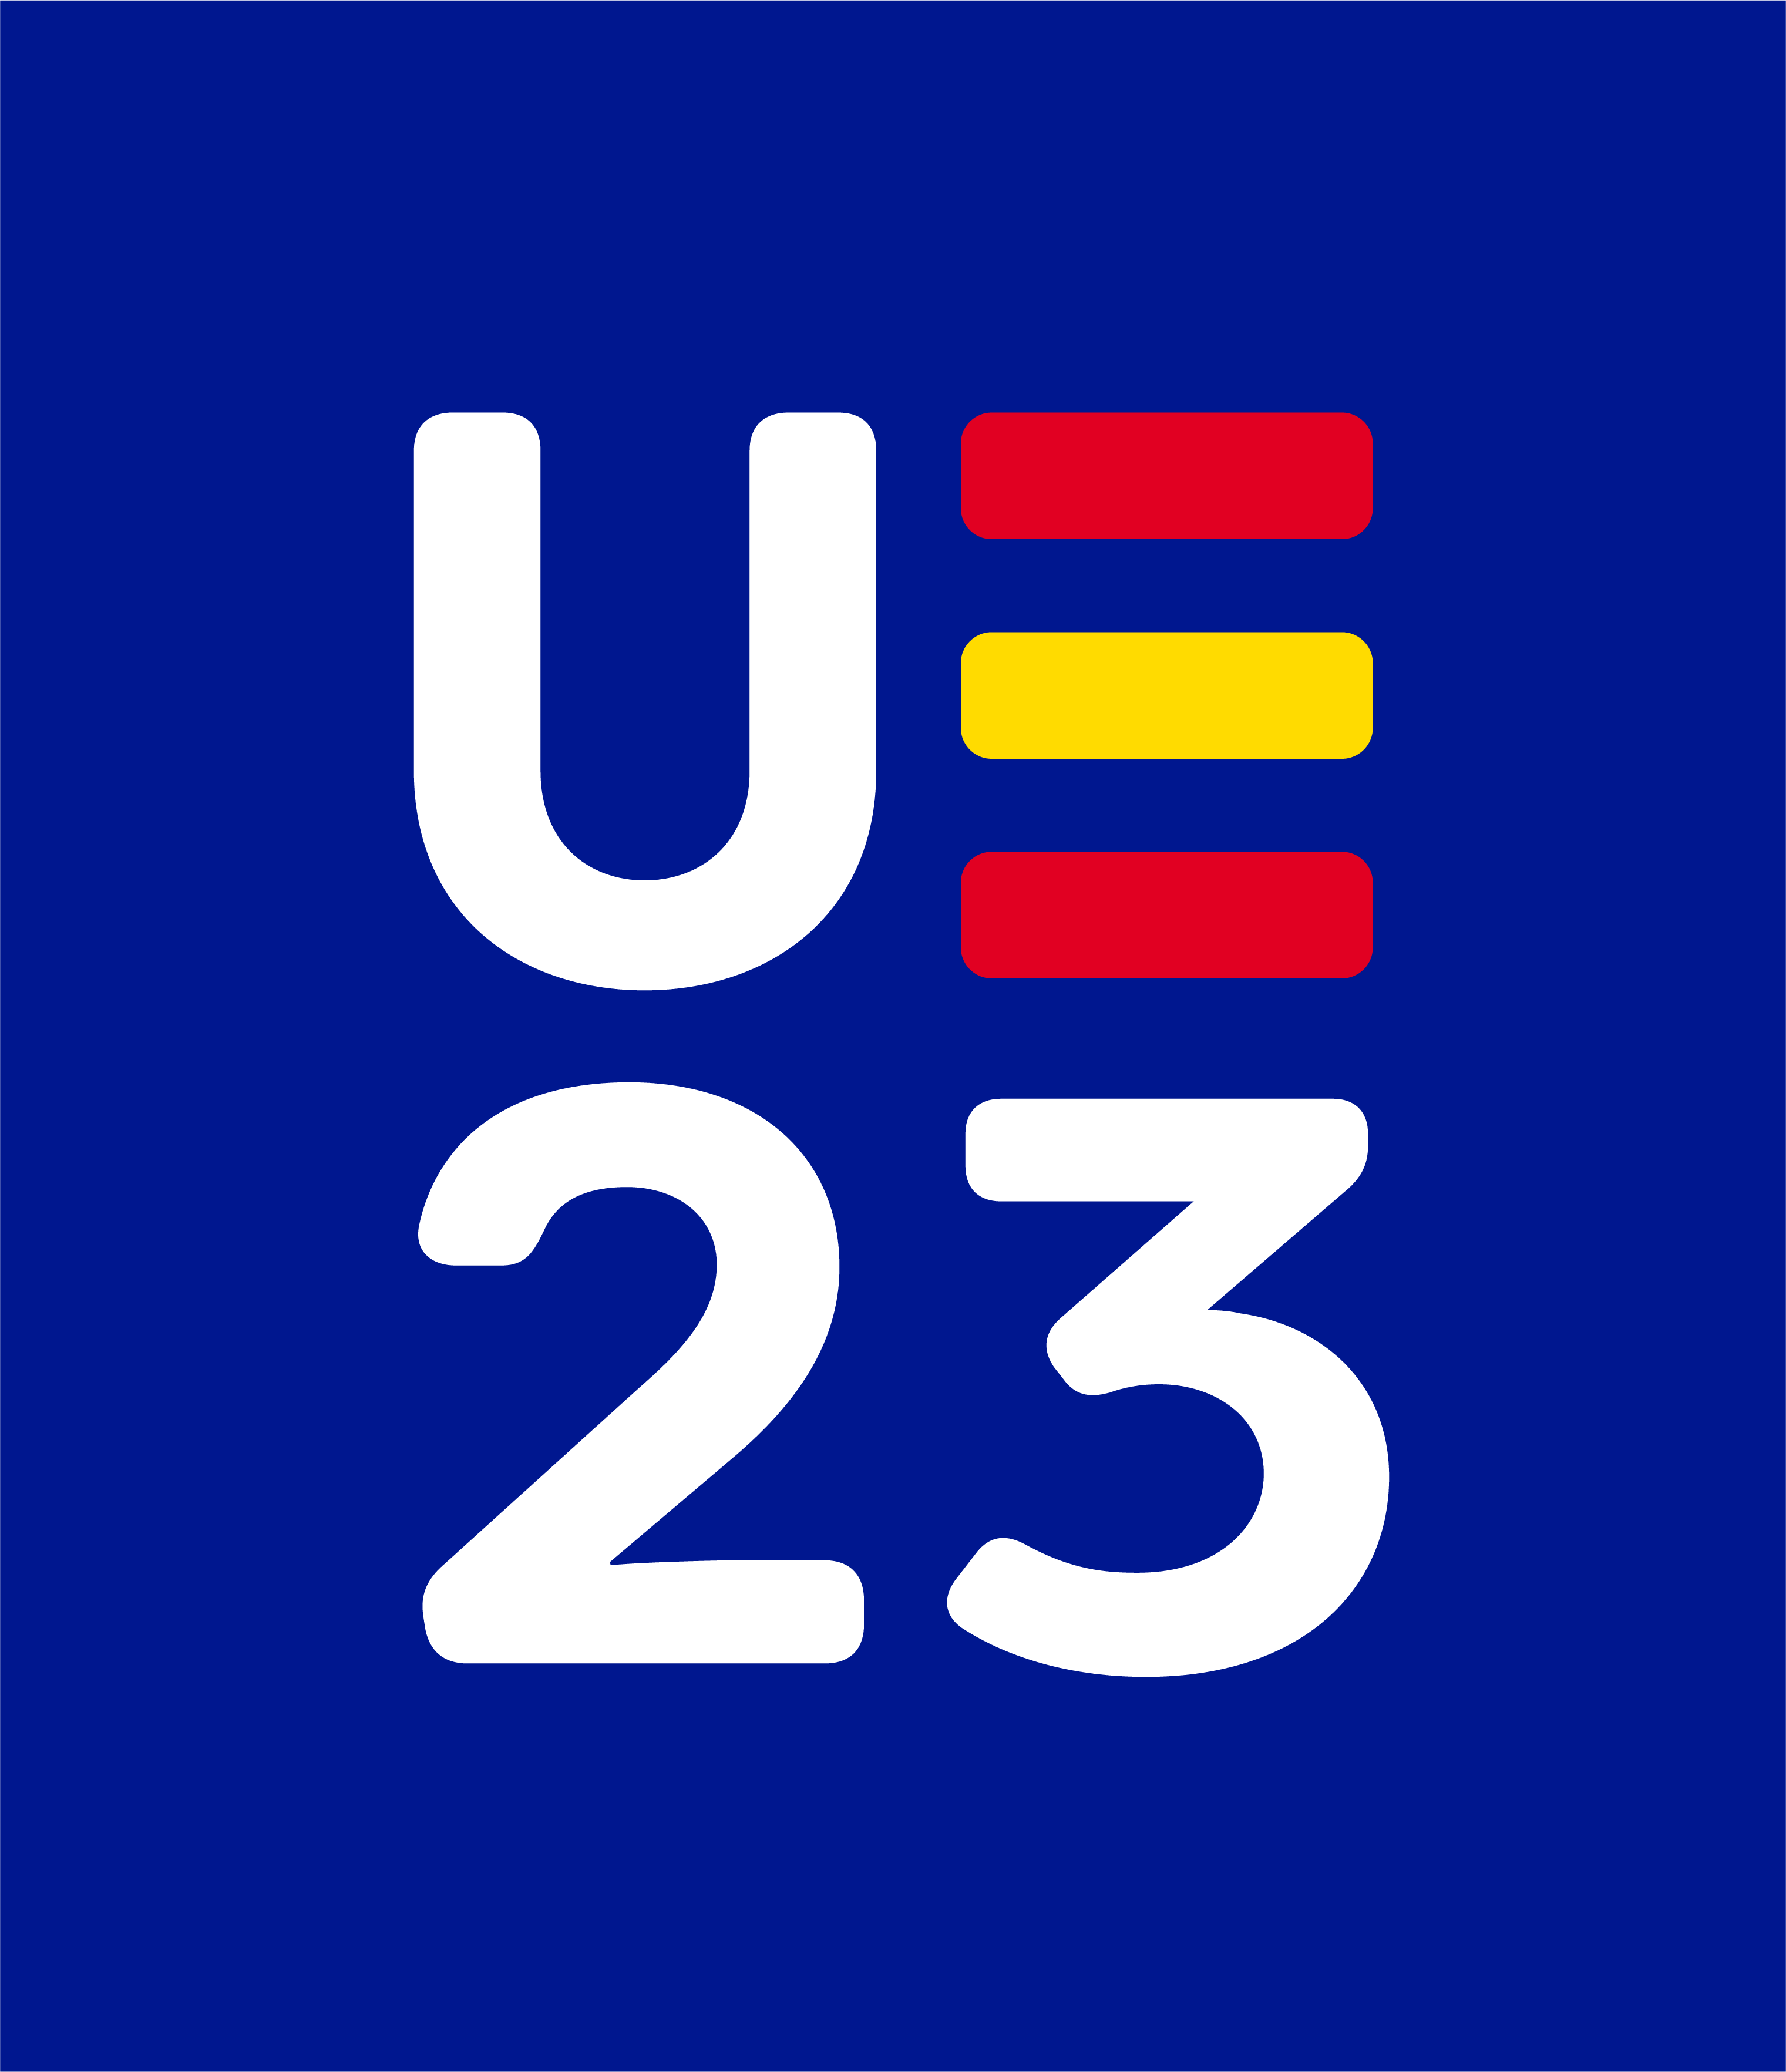 Logotipo de la Presidencia española del Consejo de la Unión Europea